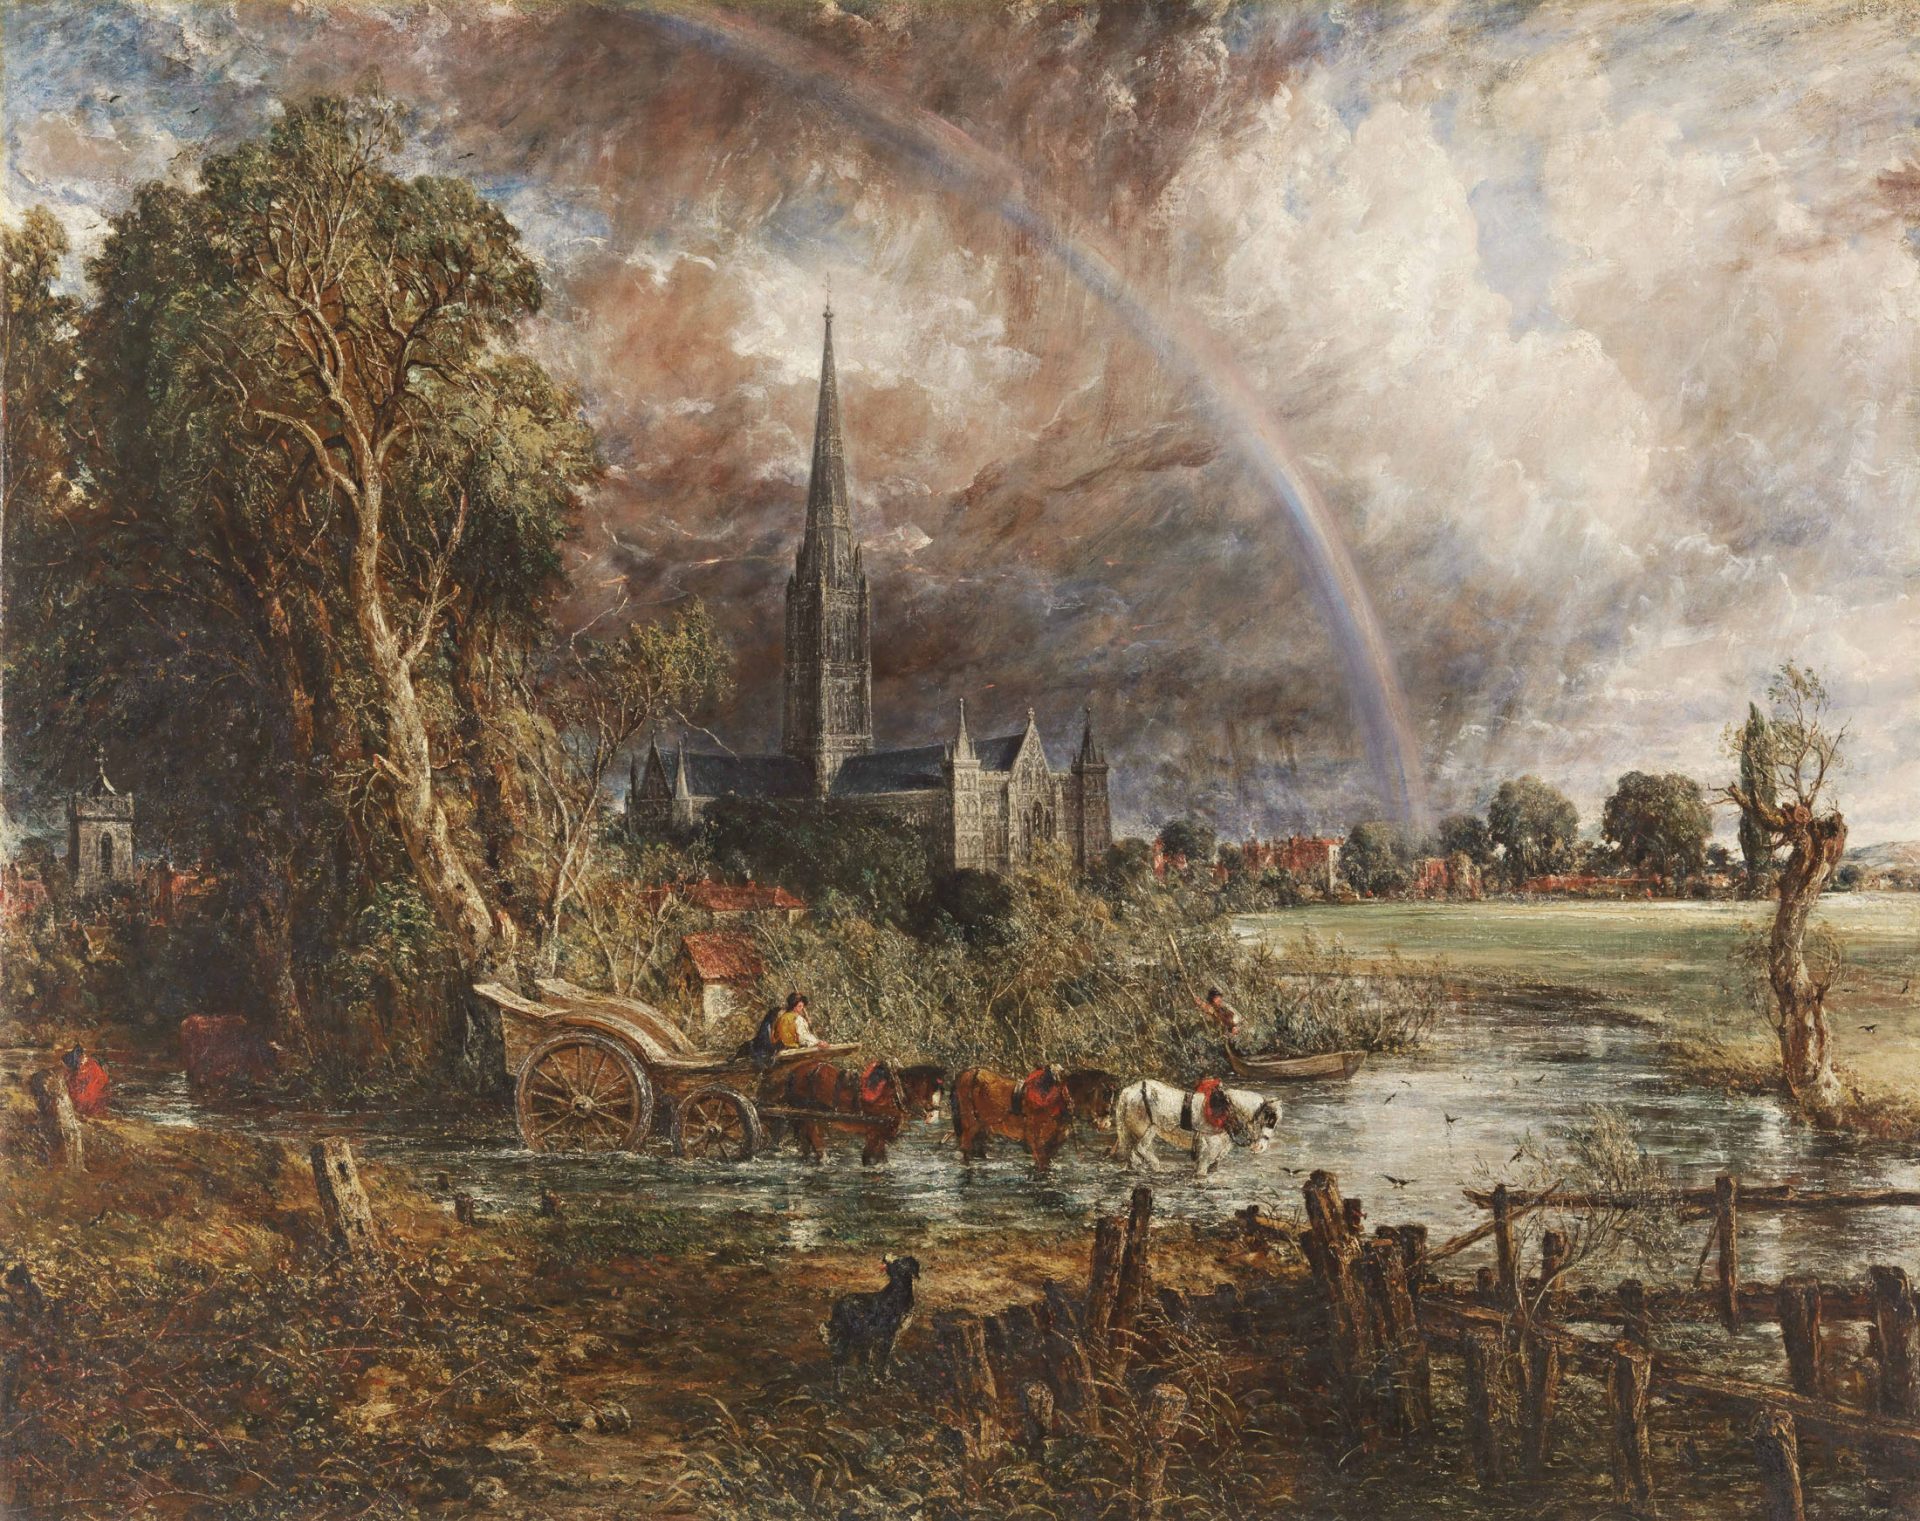 John Constable, La Cattedrale di Salisbury vista dai prati, 1831, olio su tela, 153,7x190cm, Tate UK, acquistato con Fondo Lotteria Patrimonio Fondazione Manton Art Fund 2013